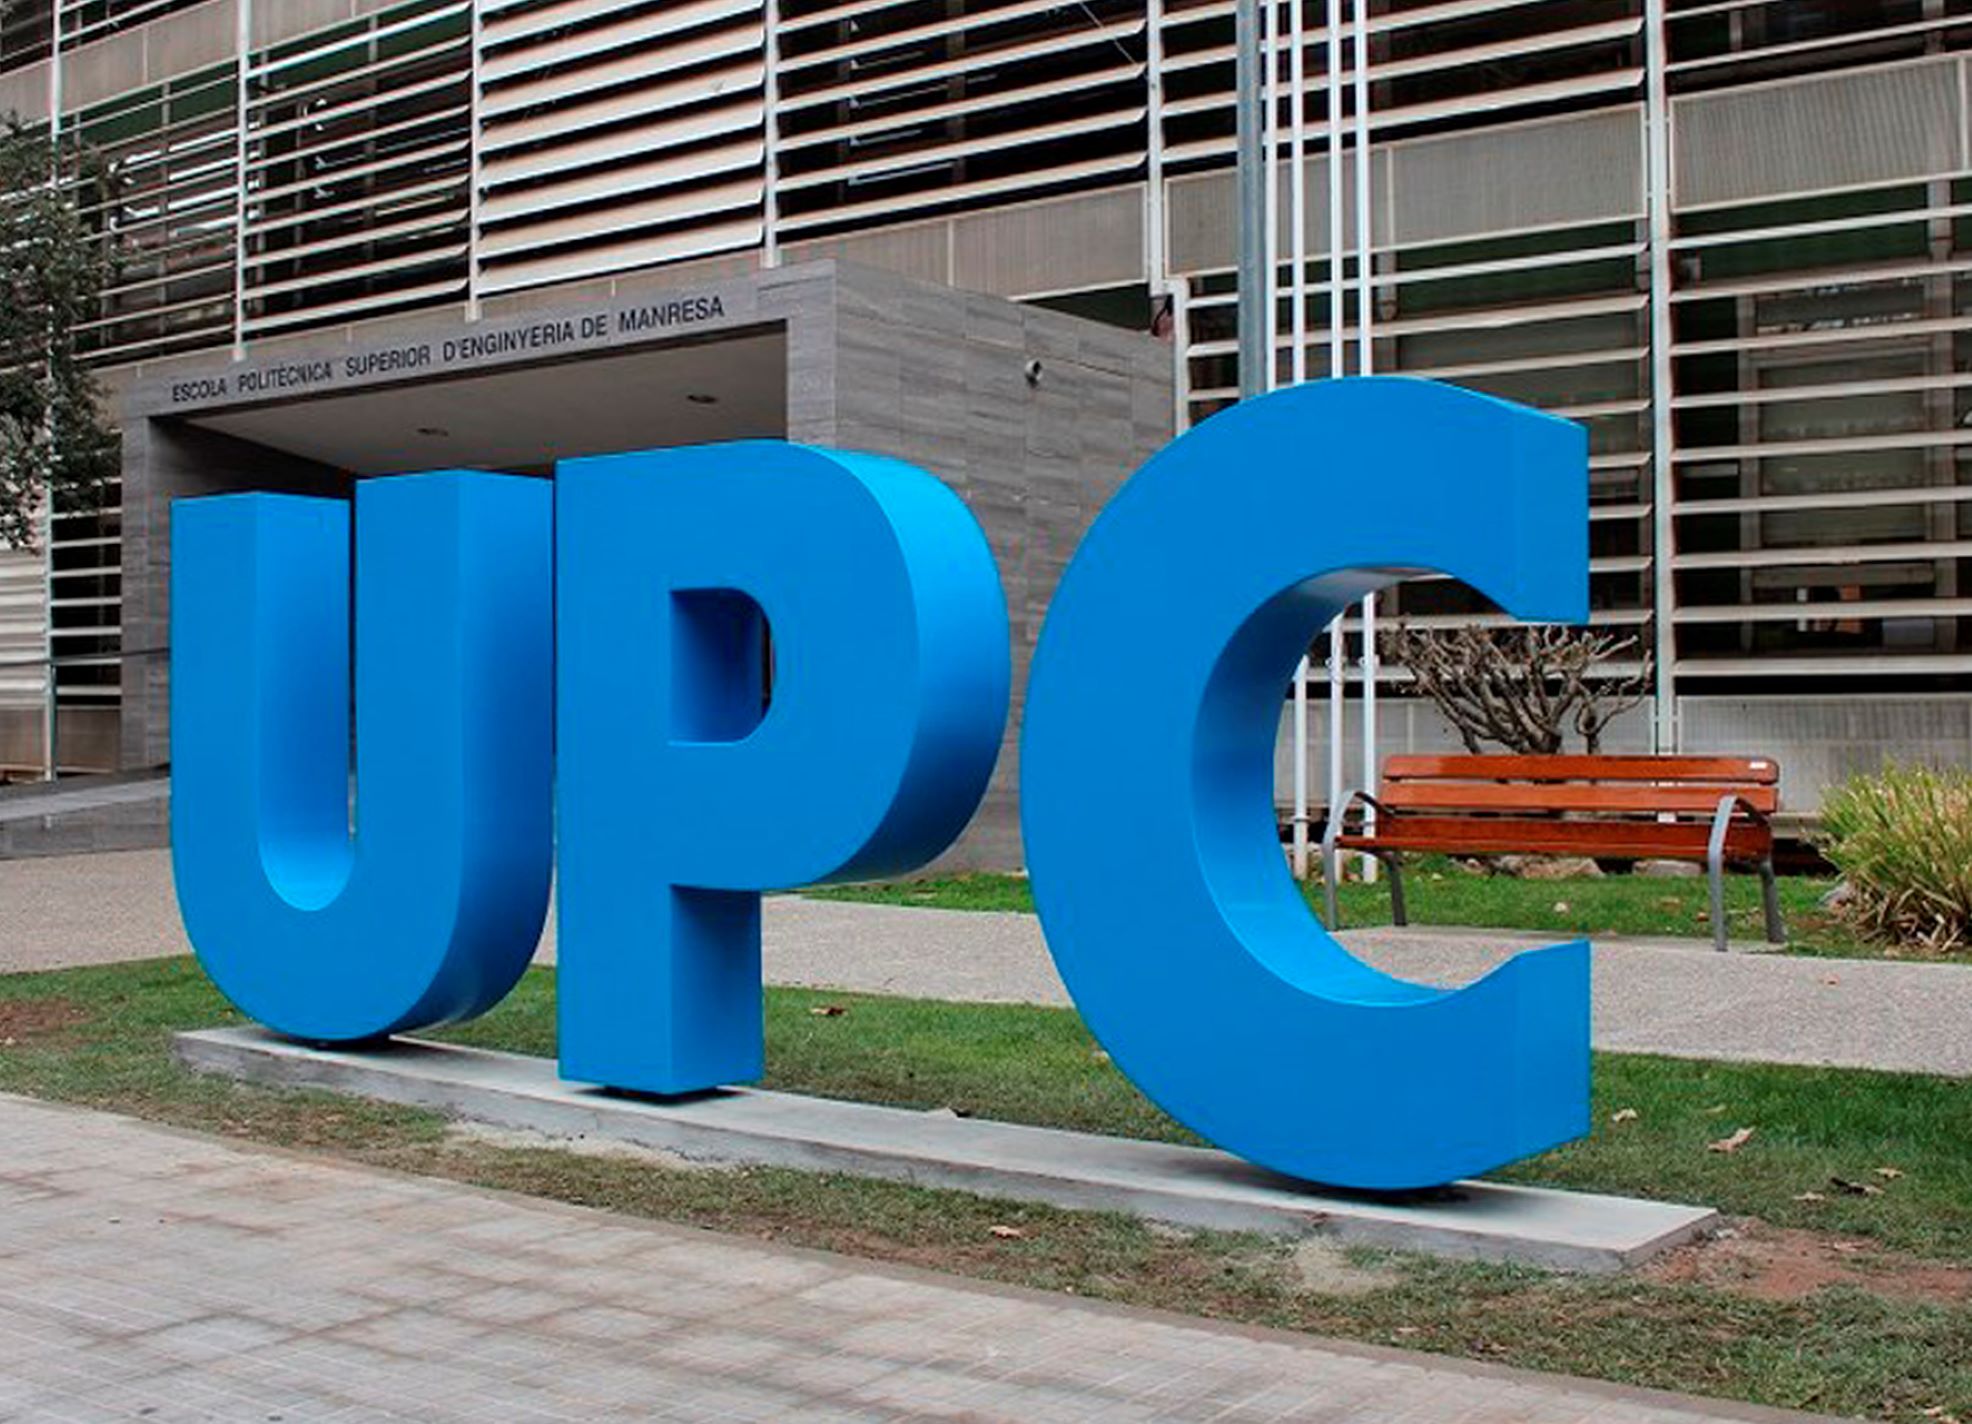 Campus Manresa UPC / UPC